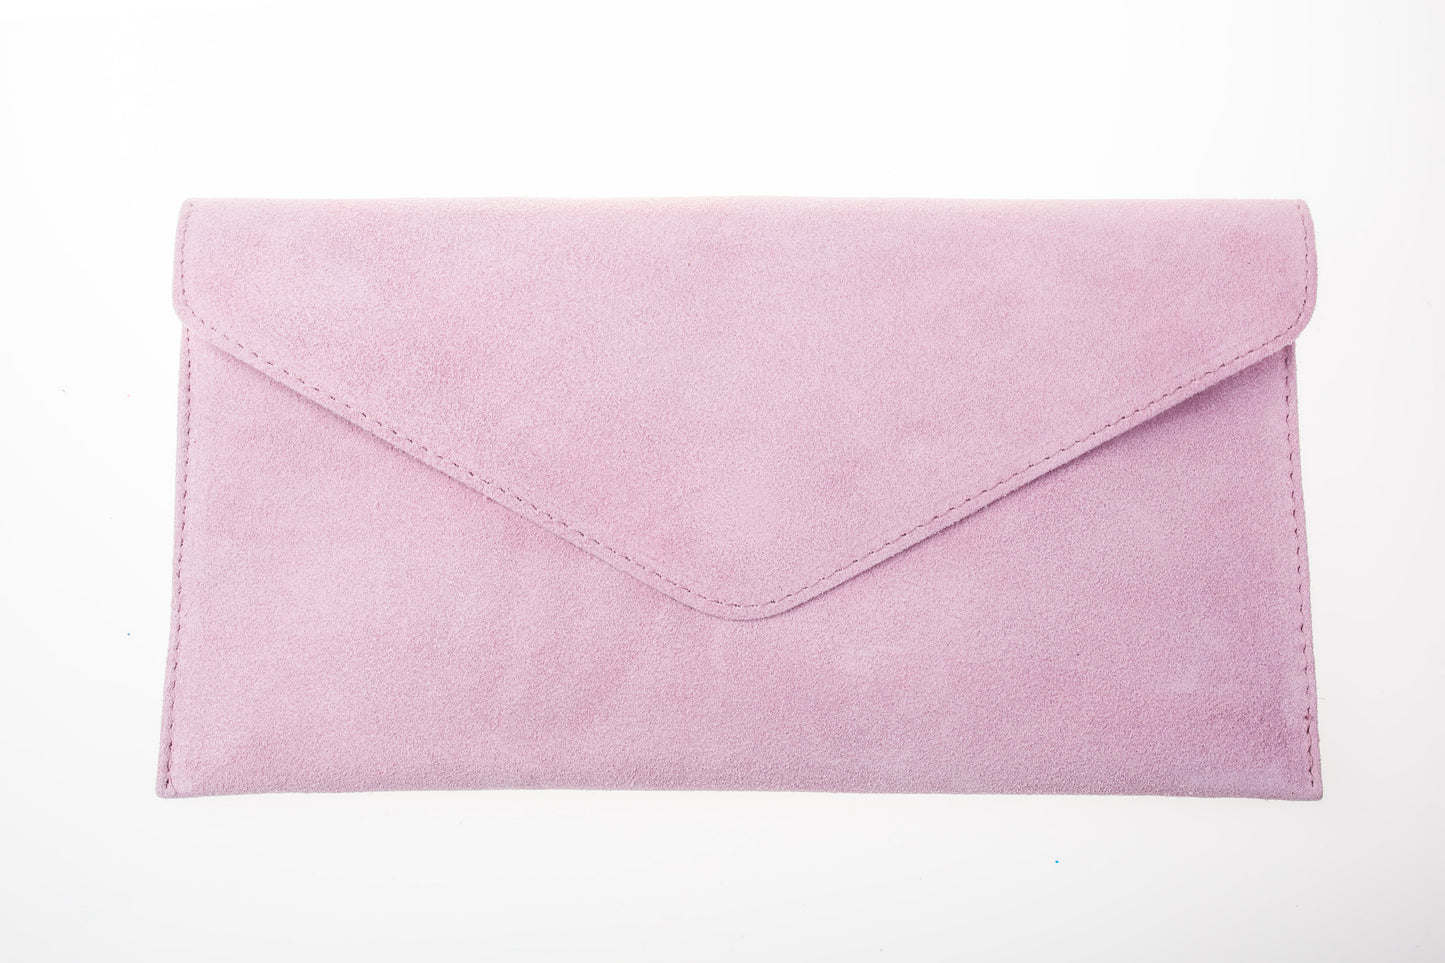 Pink envelope clutch bag